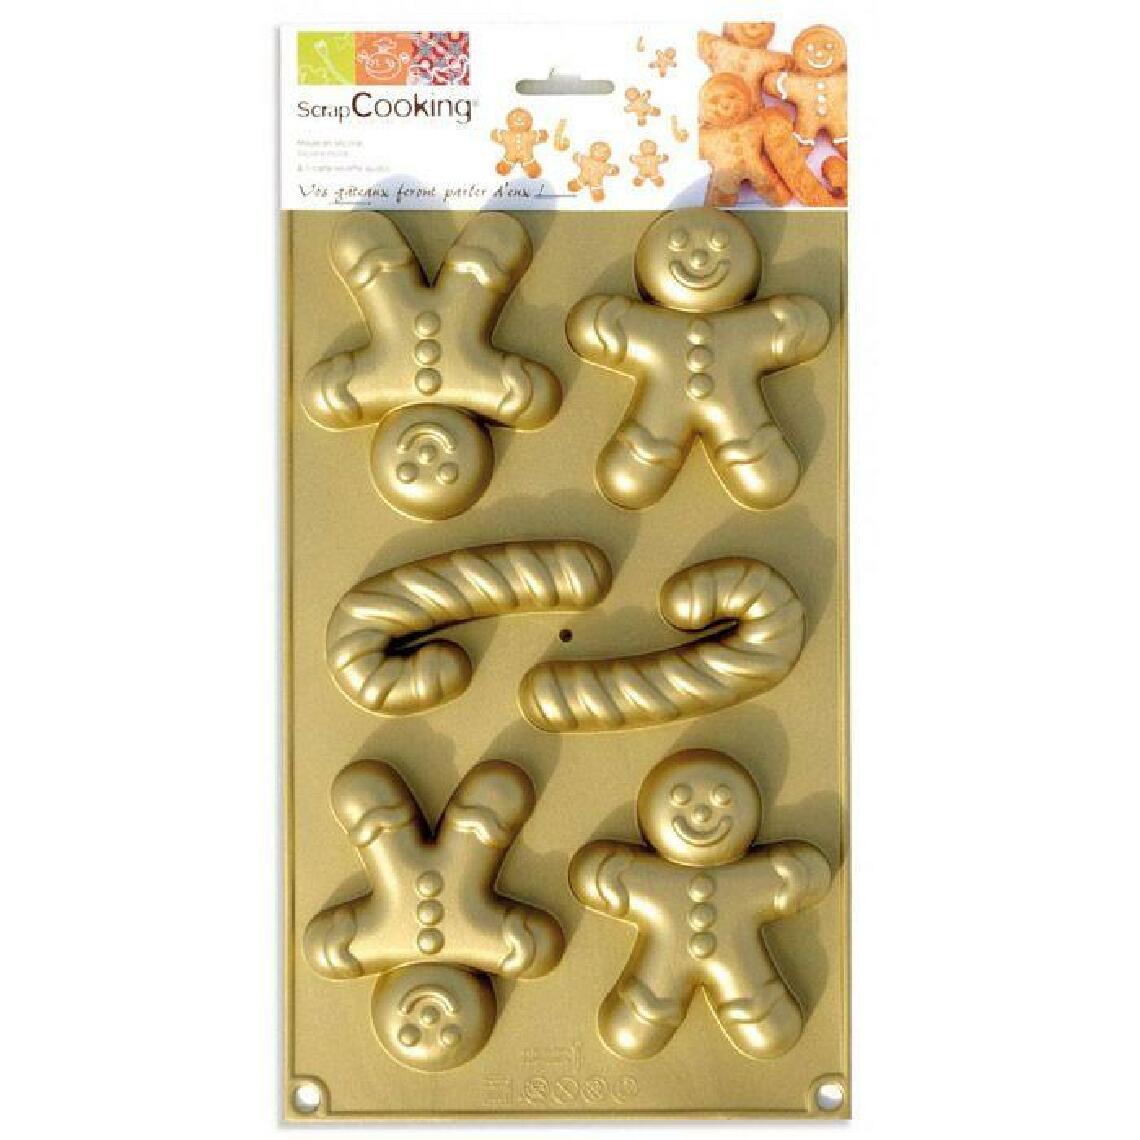 Scrapcooking - Moule en silicone Bonshommes en pain d'épice - Kits créatifs